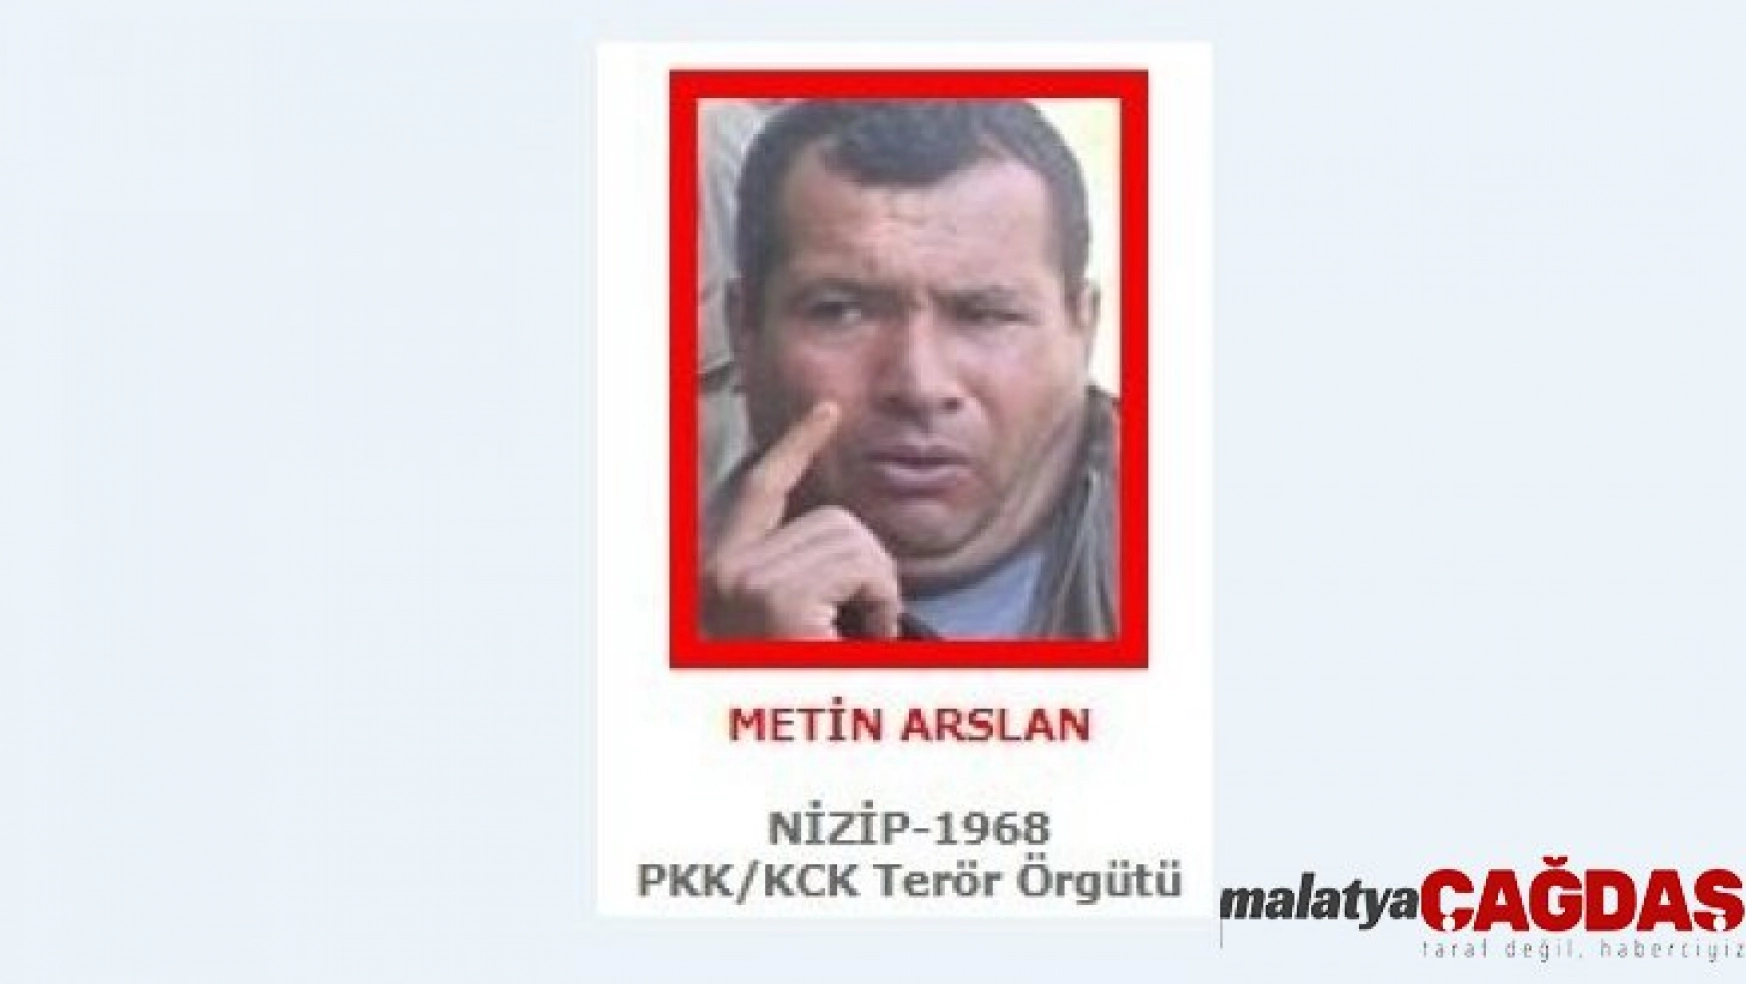 MİT'in operasyonuyla etkisiz hale getirilen YPG/PKK'nın sözde istihbarat sorumlusu Metin Arslan'ın Abdullah Öcalan'ın dayısının oğlu olduğu bildirildi.